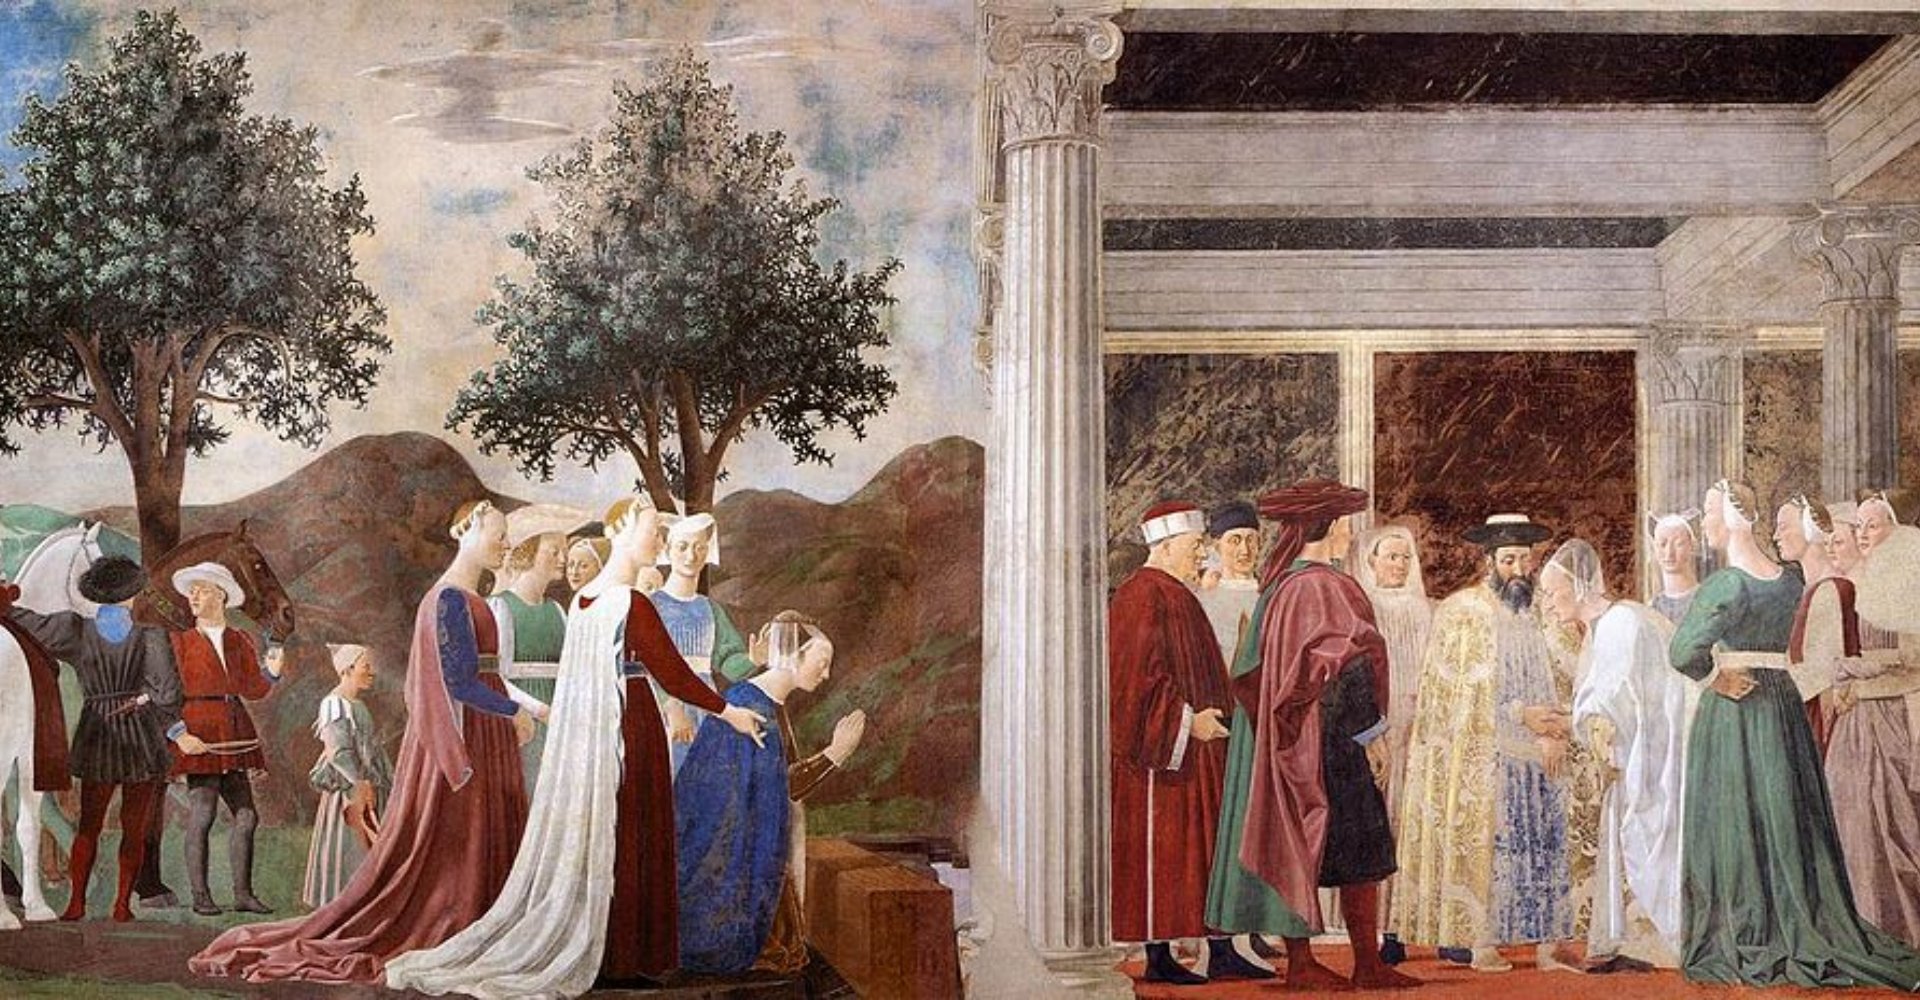 The History of the True Cross by Piero della Francesca